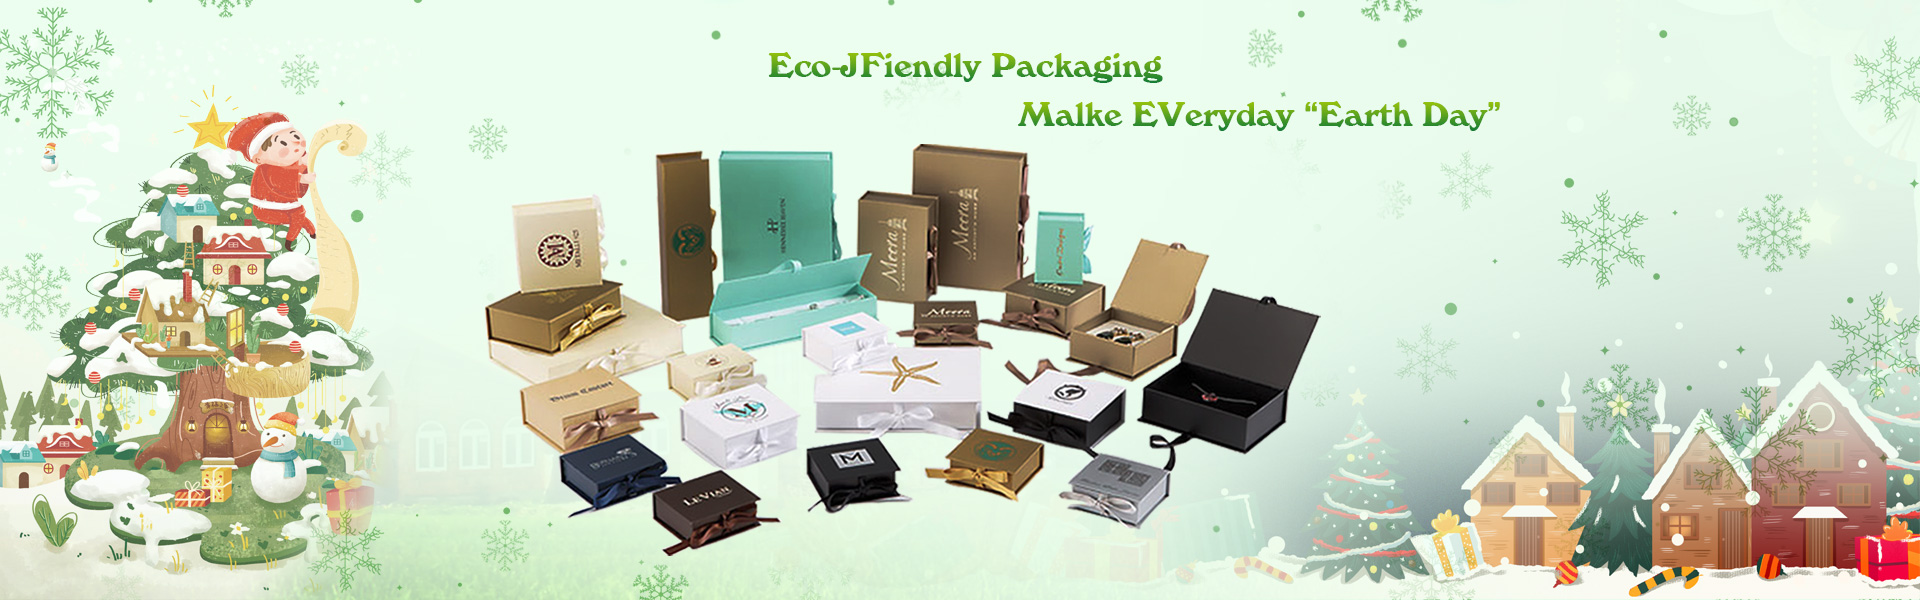 Подарочная коробка, упаковочная коробка, этикетка,Dongguan chengyuan packaging products Co,.Ltd